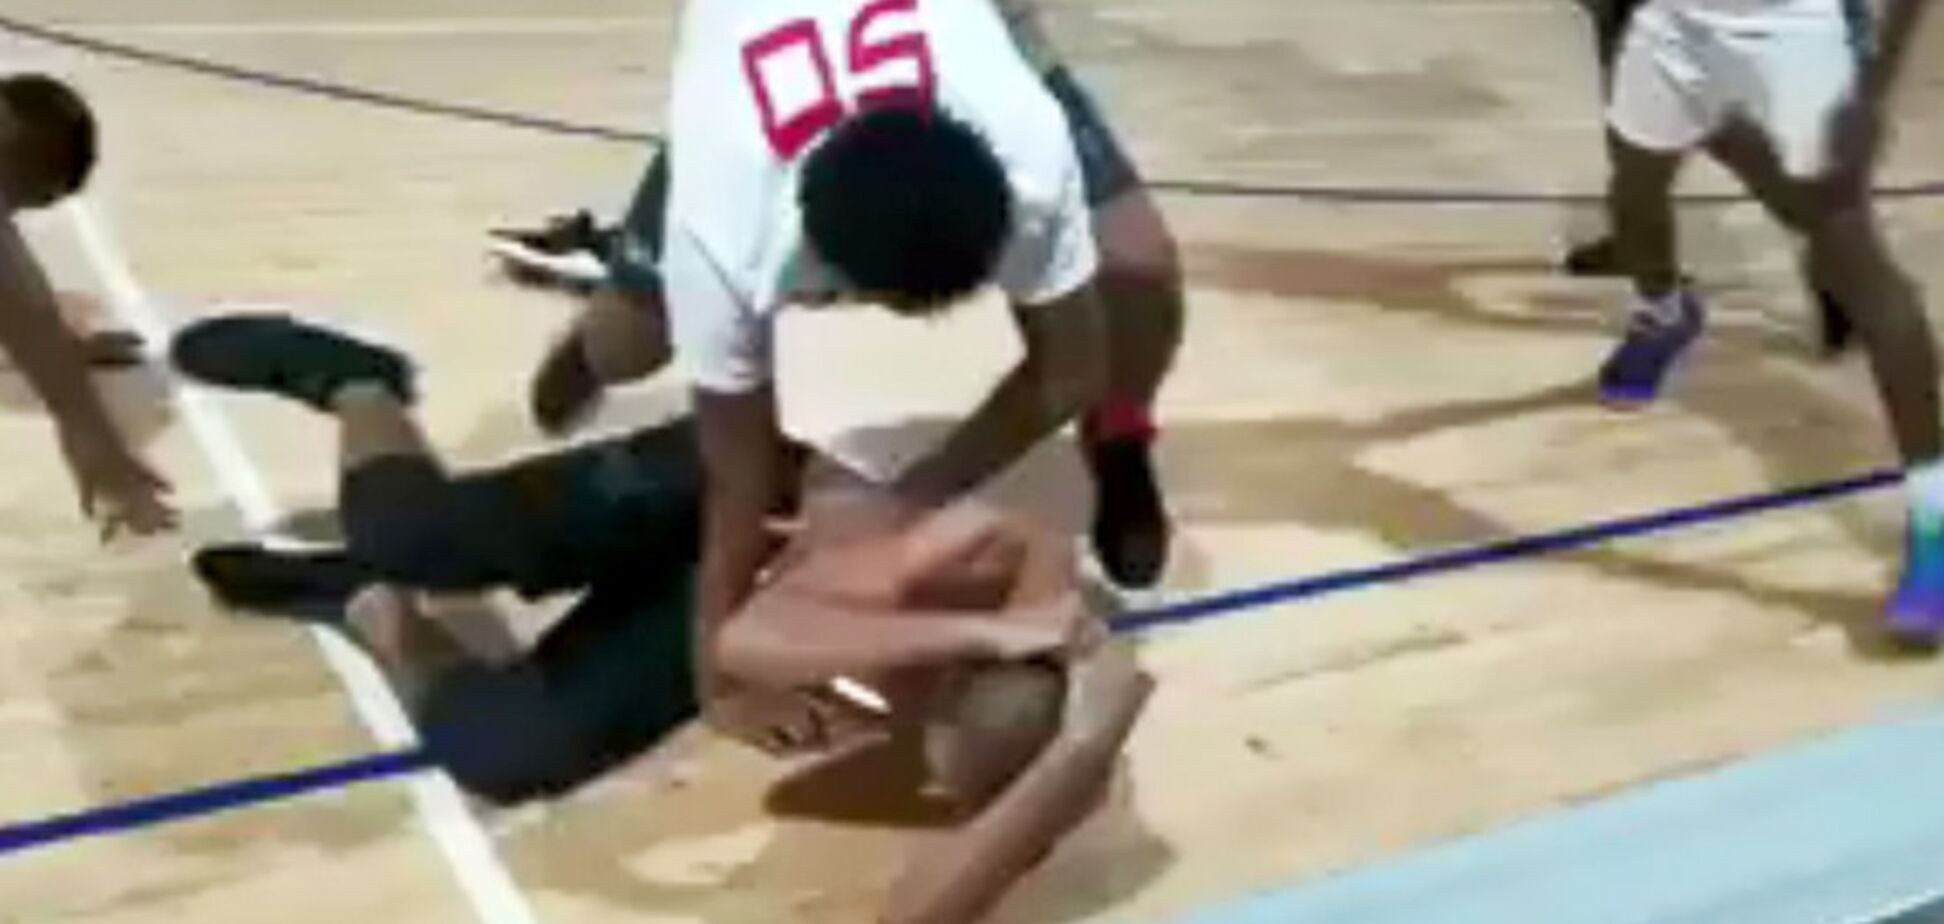  Баскетболисты-школьники в США устроили  жуткое побоище - опубликовано видео